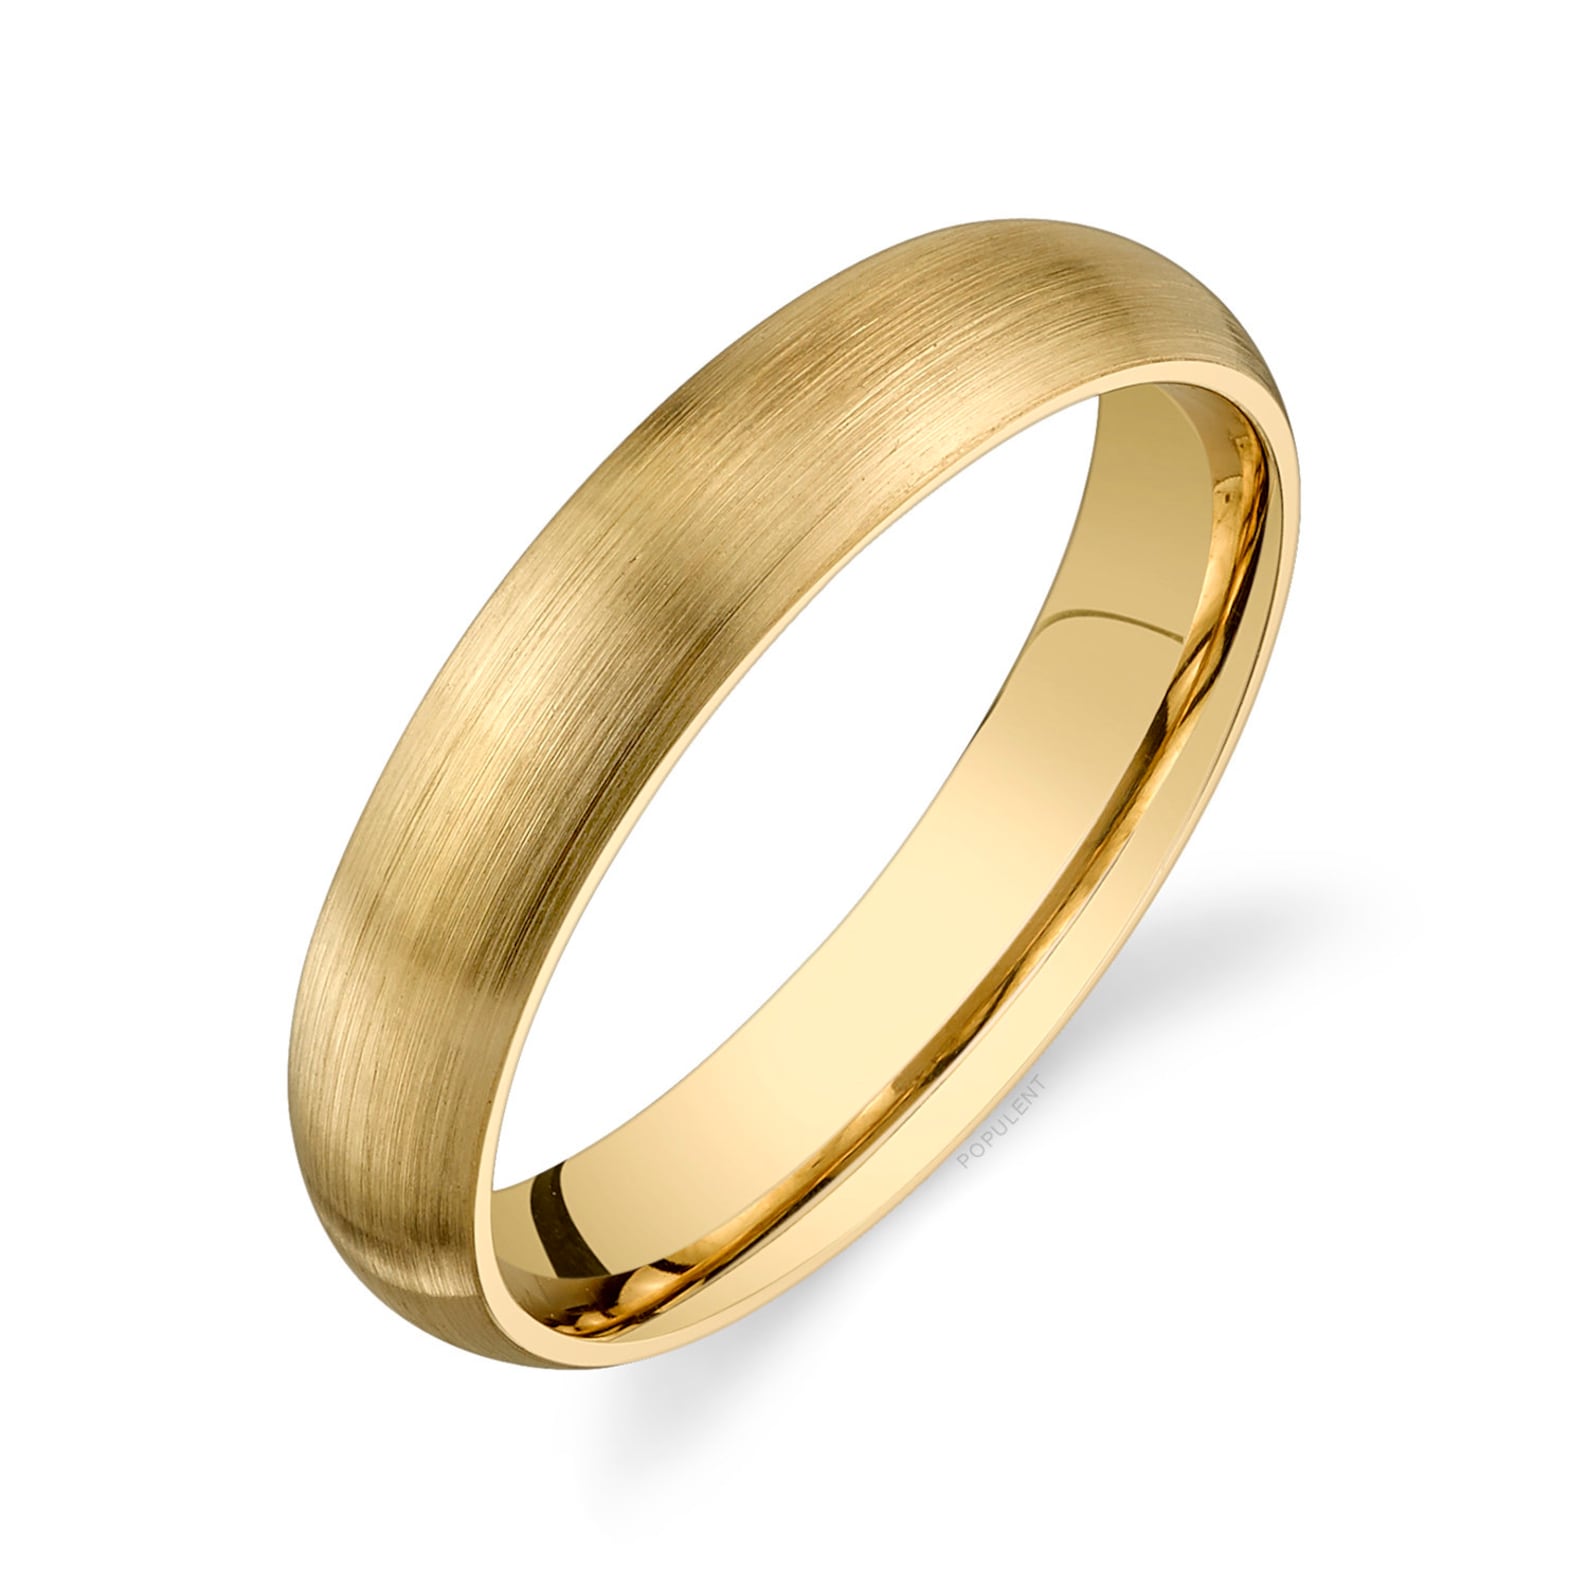 Кольца комфорт фит. Обручальные кольца комфорт. Обручальное кольцо золотое 5мм классика. Обручальные кольца с чистым золотом.